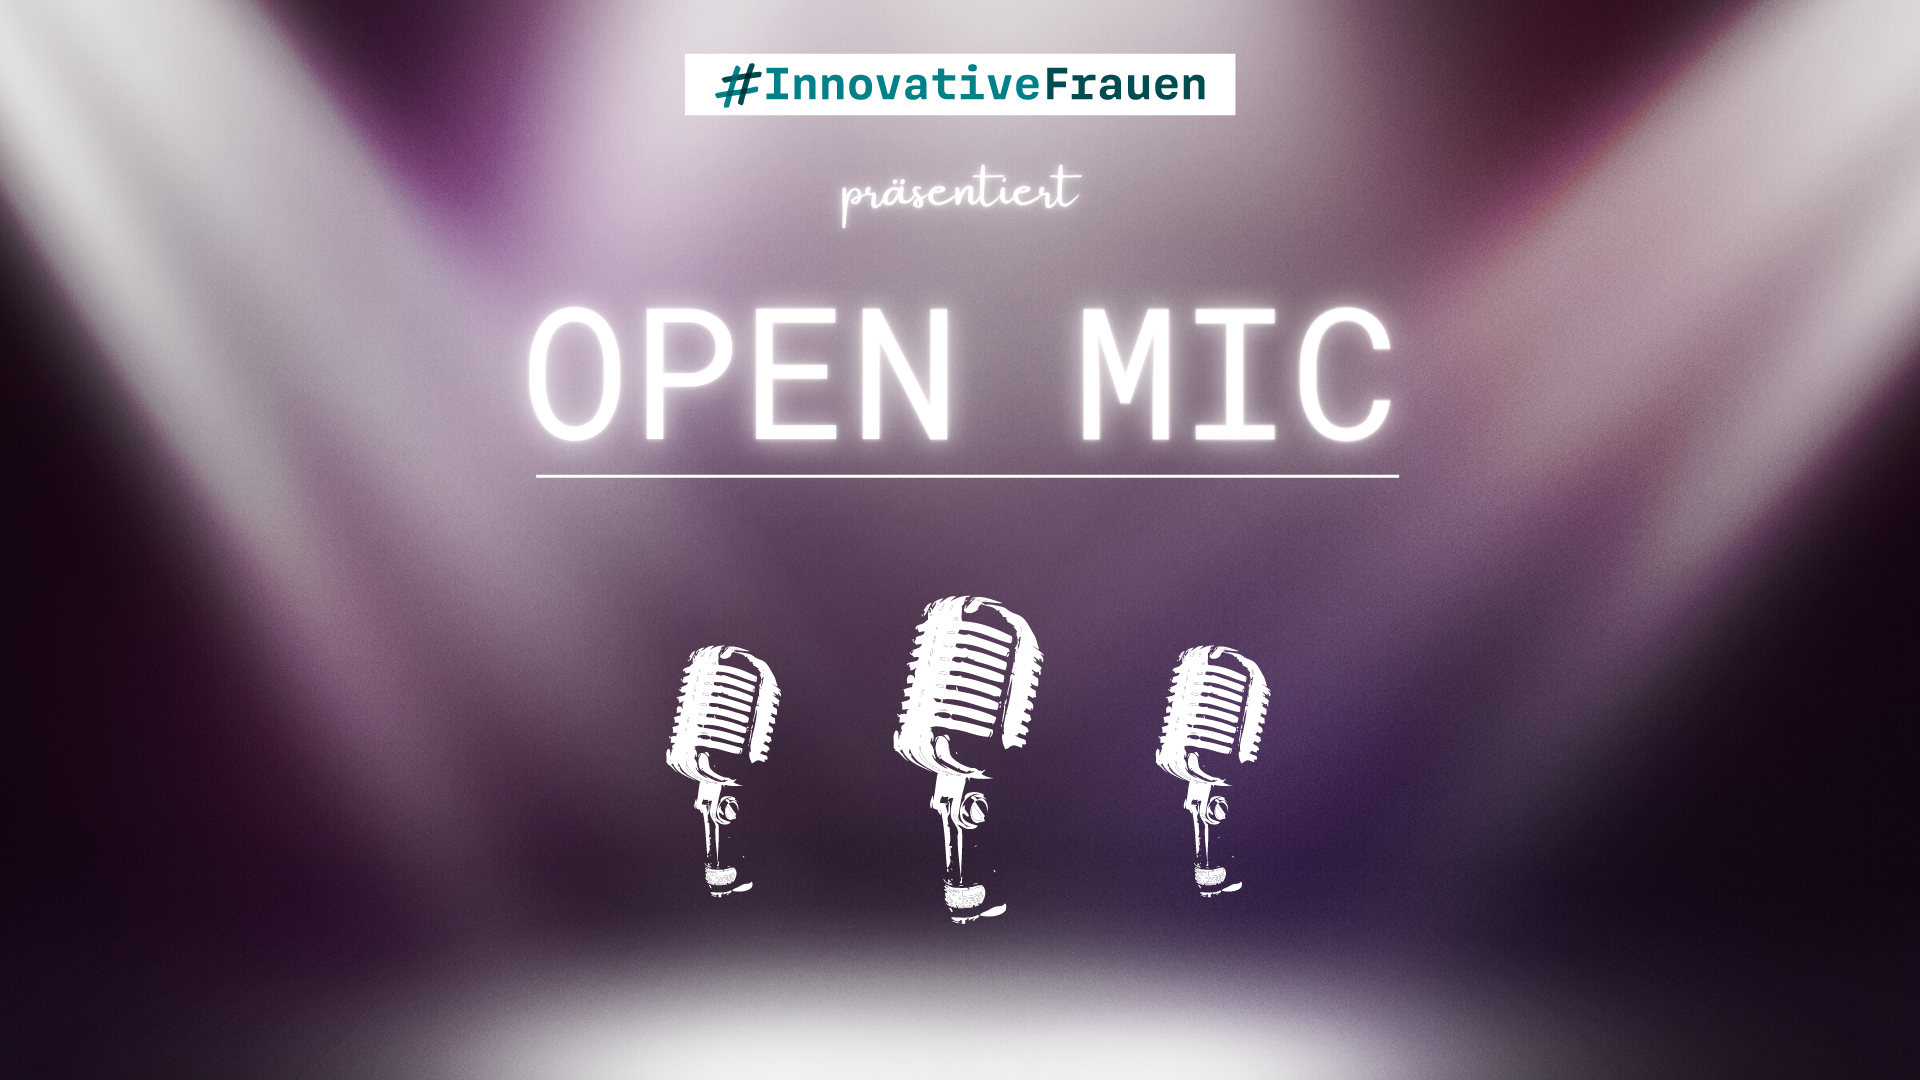 Veranstaltung Open Mic präsentiert von #InnovativeFrauen, im Vordergrund drei Mikrofone